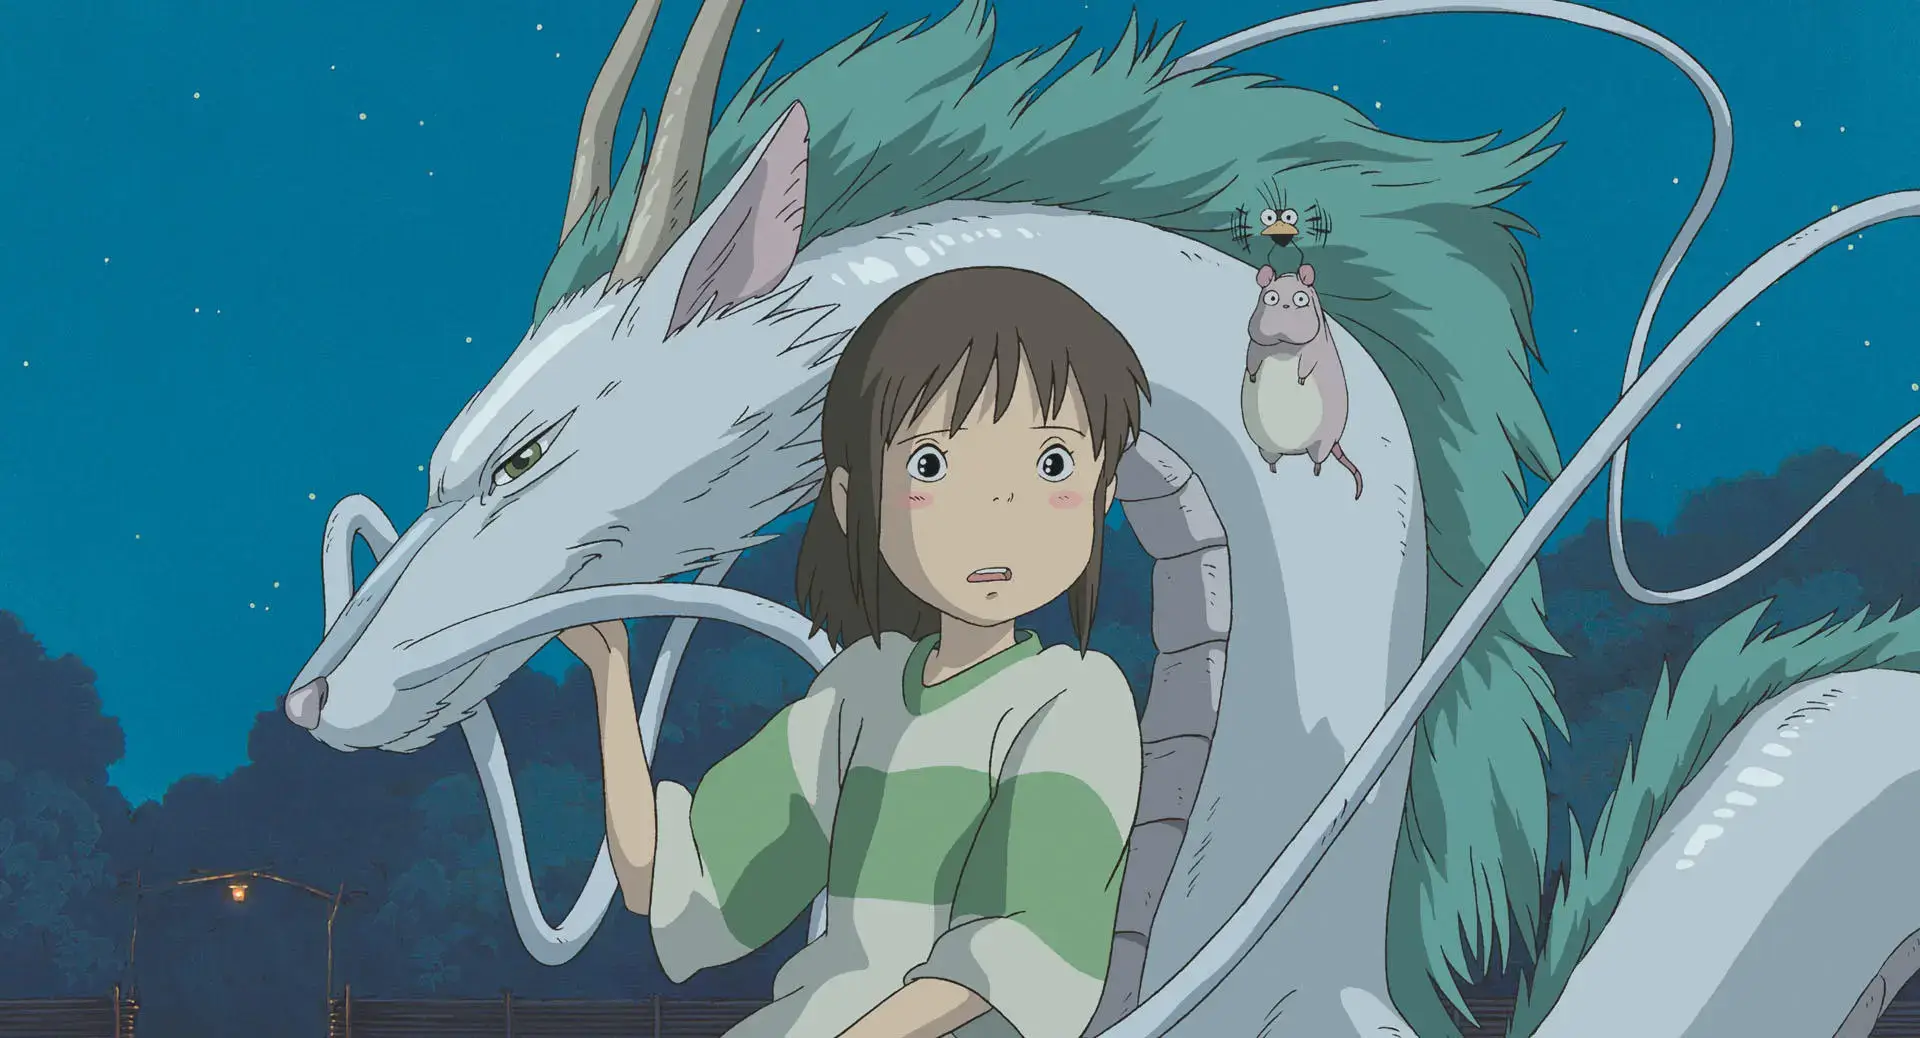 Chihiro and Haku – Spirited Away (2001)